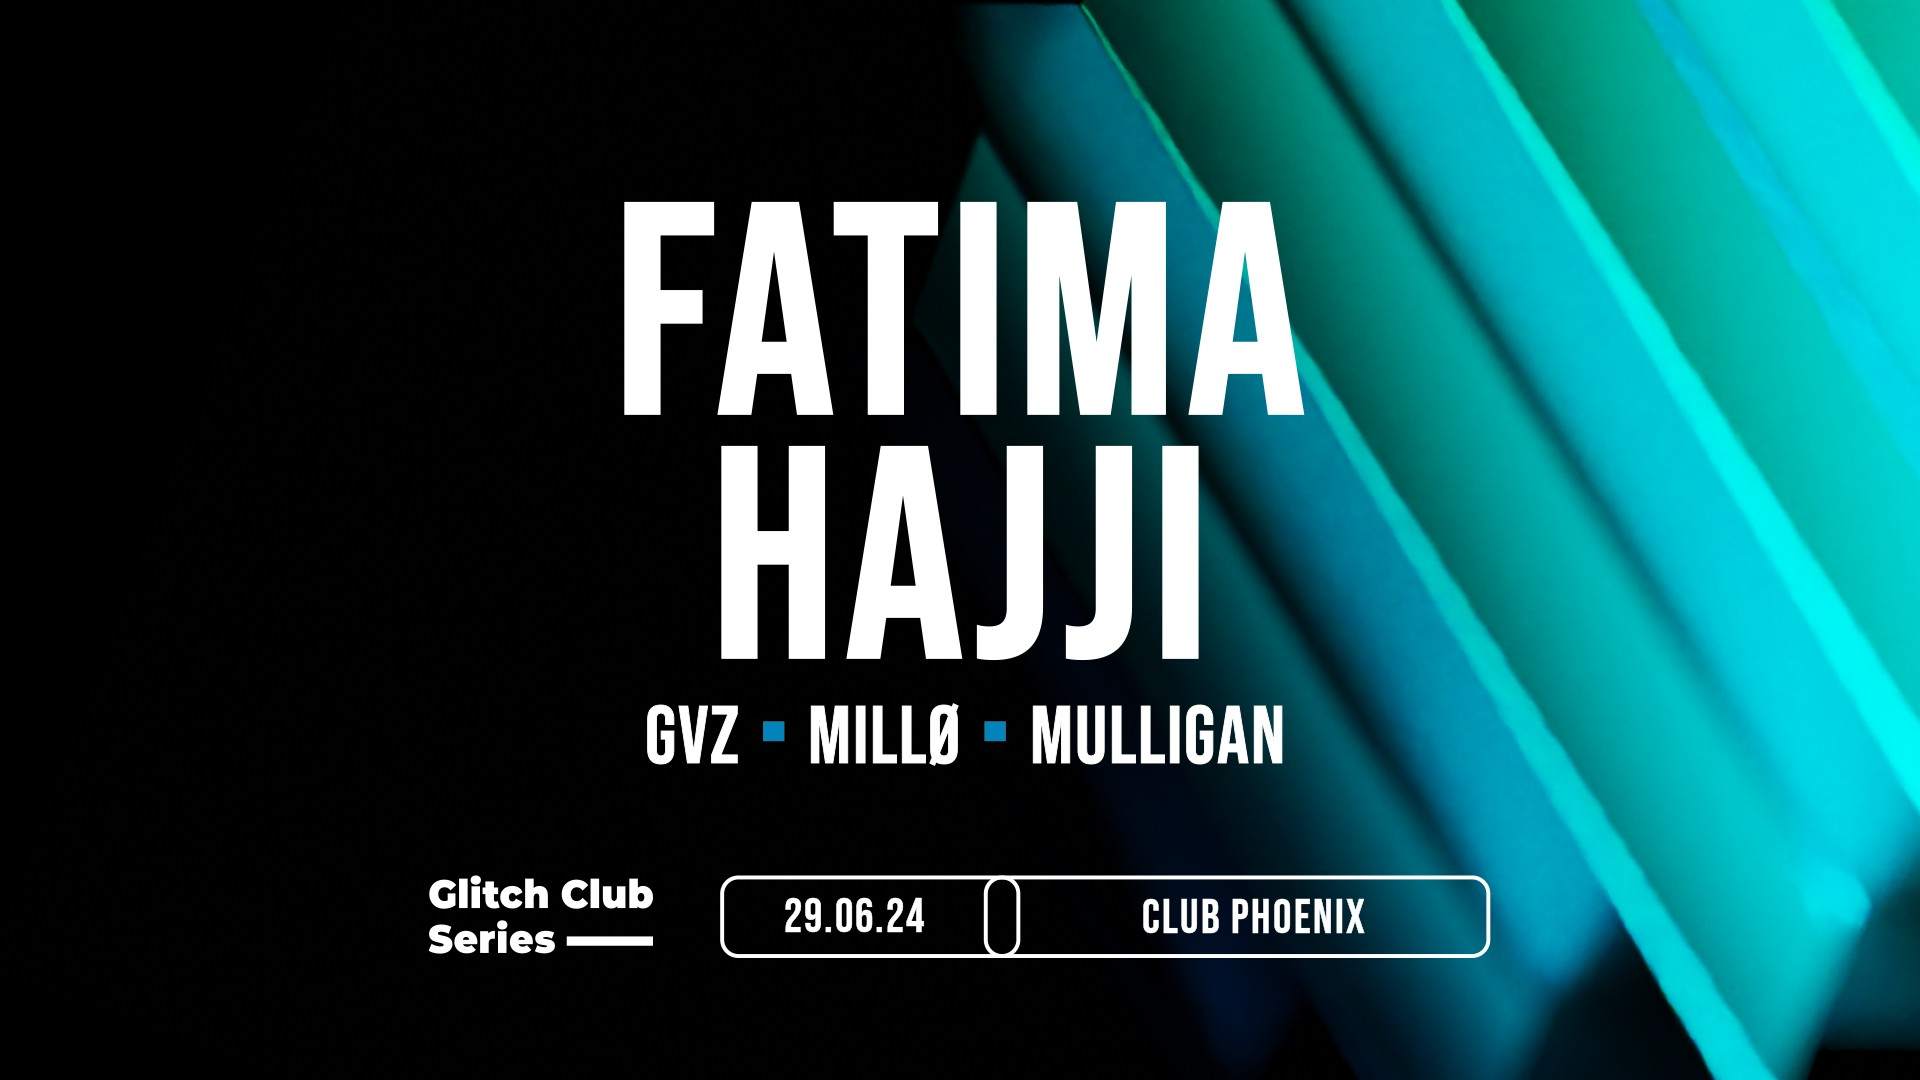 Glitch Club Series: Fatima Hajji - Página frontal